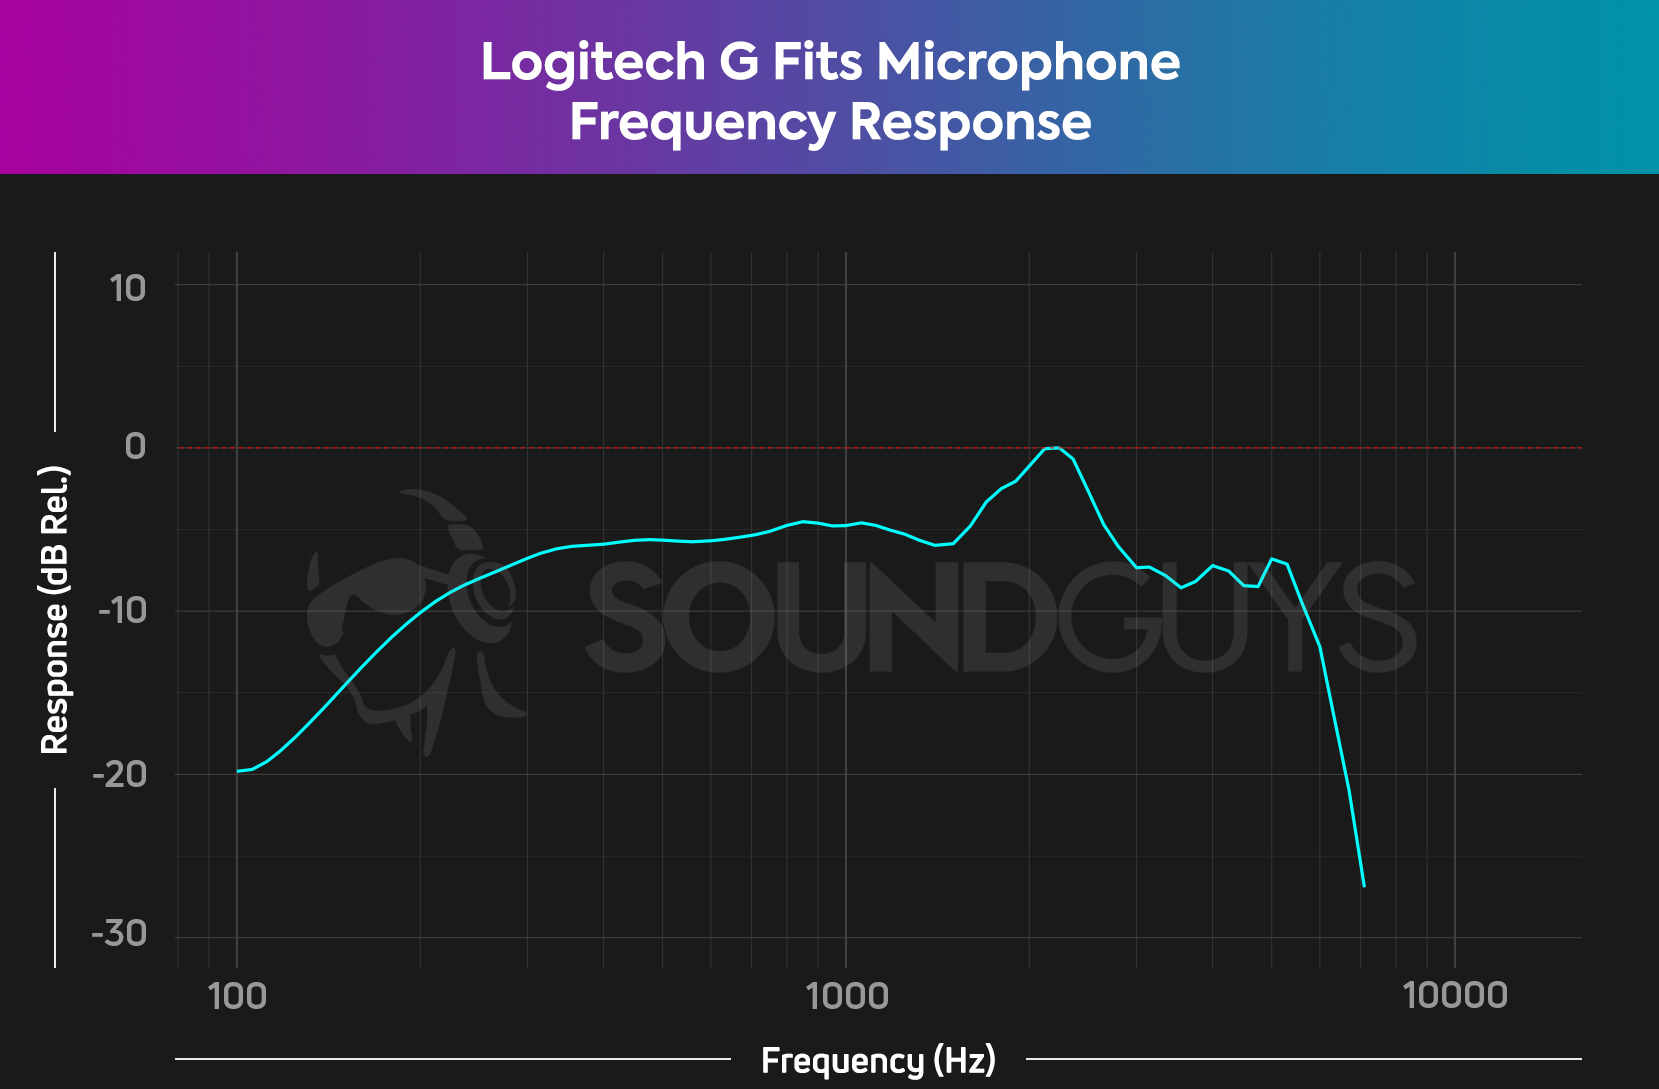 Таблица частотной характеристики для Logitech G подходит для наушников, который показывает значительный откат в диапазоне басов